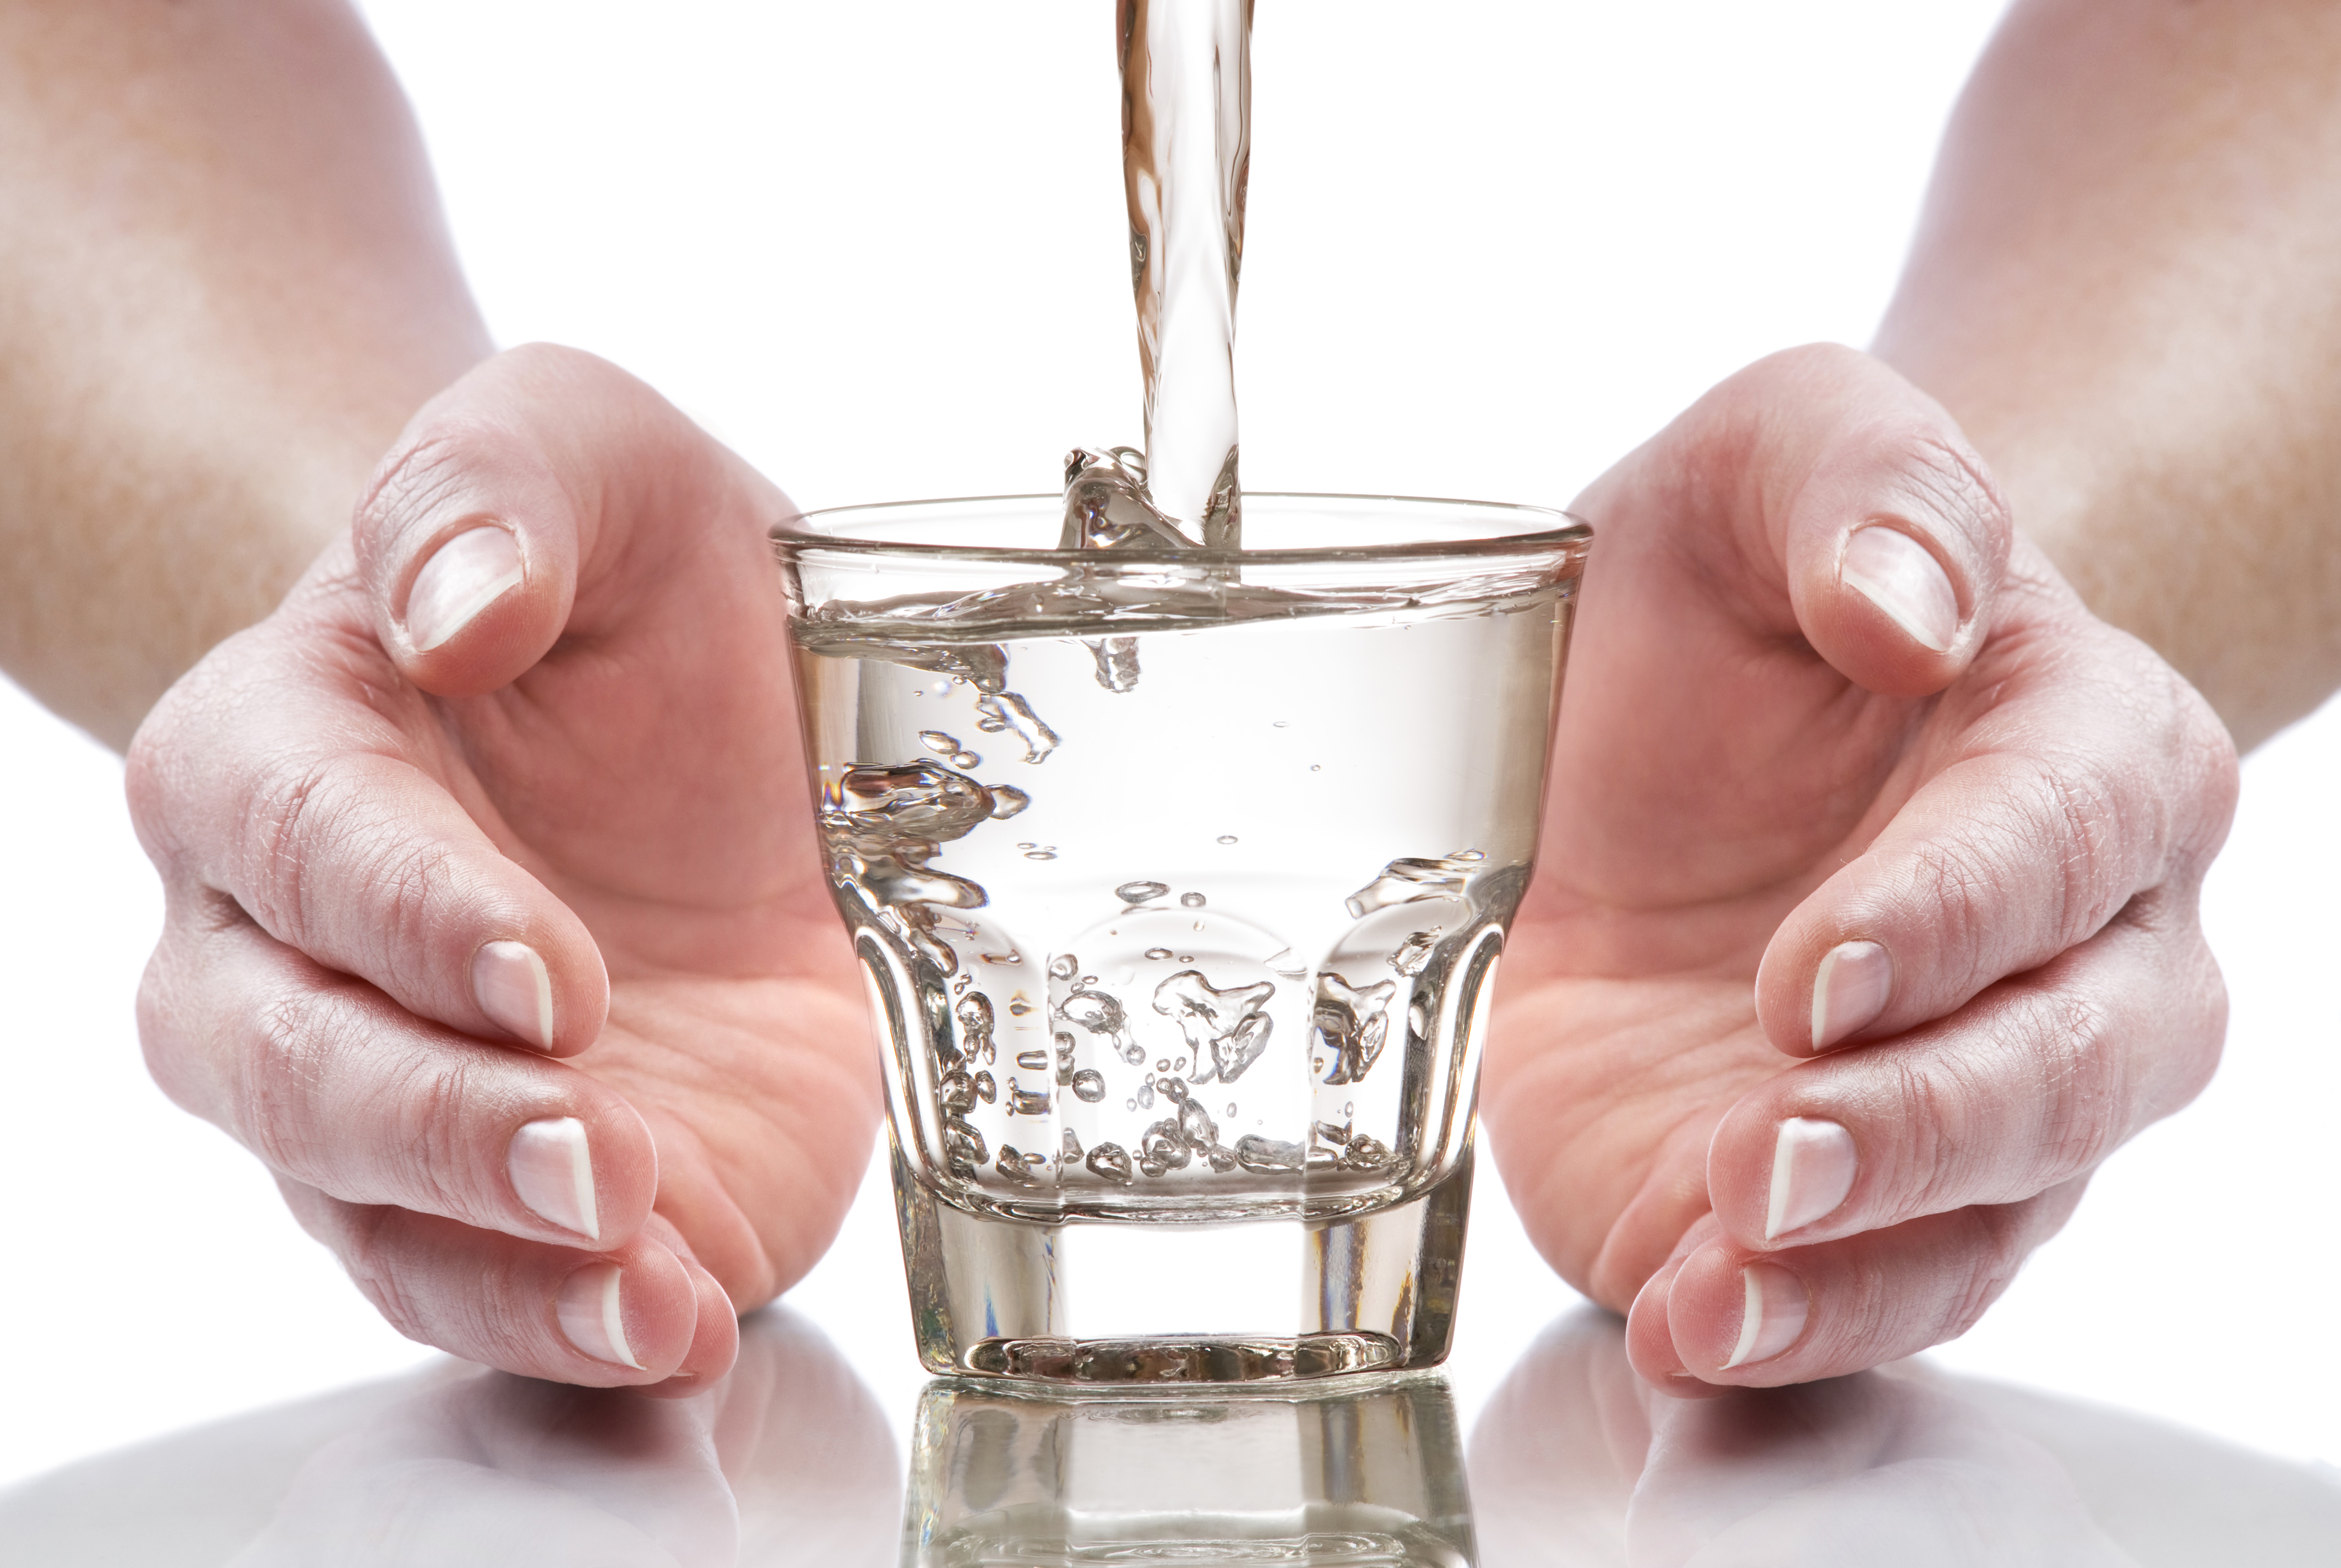 Прием теплой воды. Стакан воды. Техника стакан воды. Стакан воды для исполнения желаний. Стакан воды в руке.